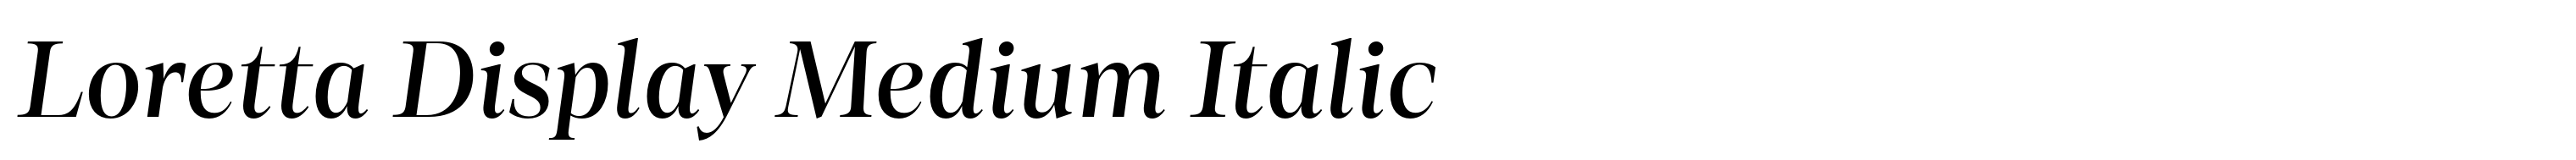 Loretta Display Medium Italic